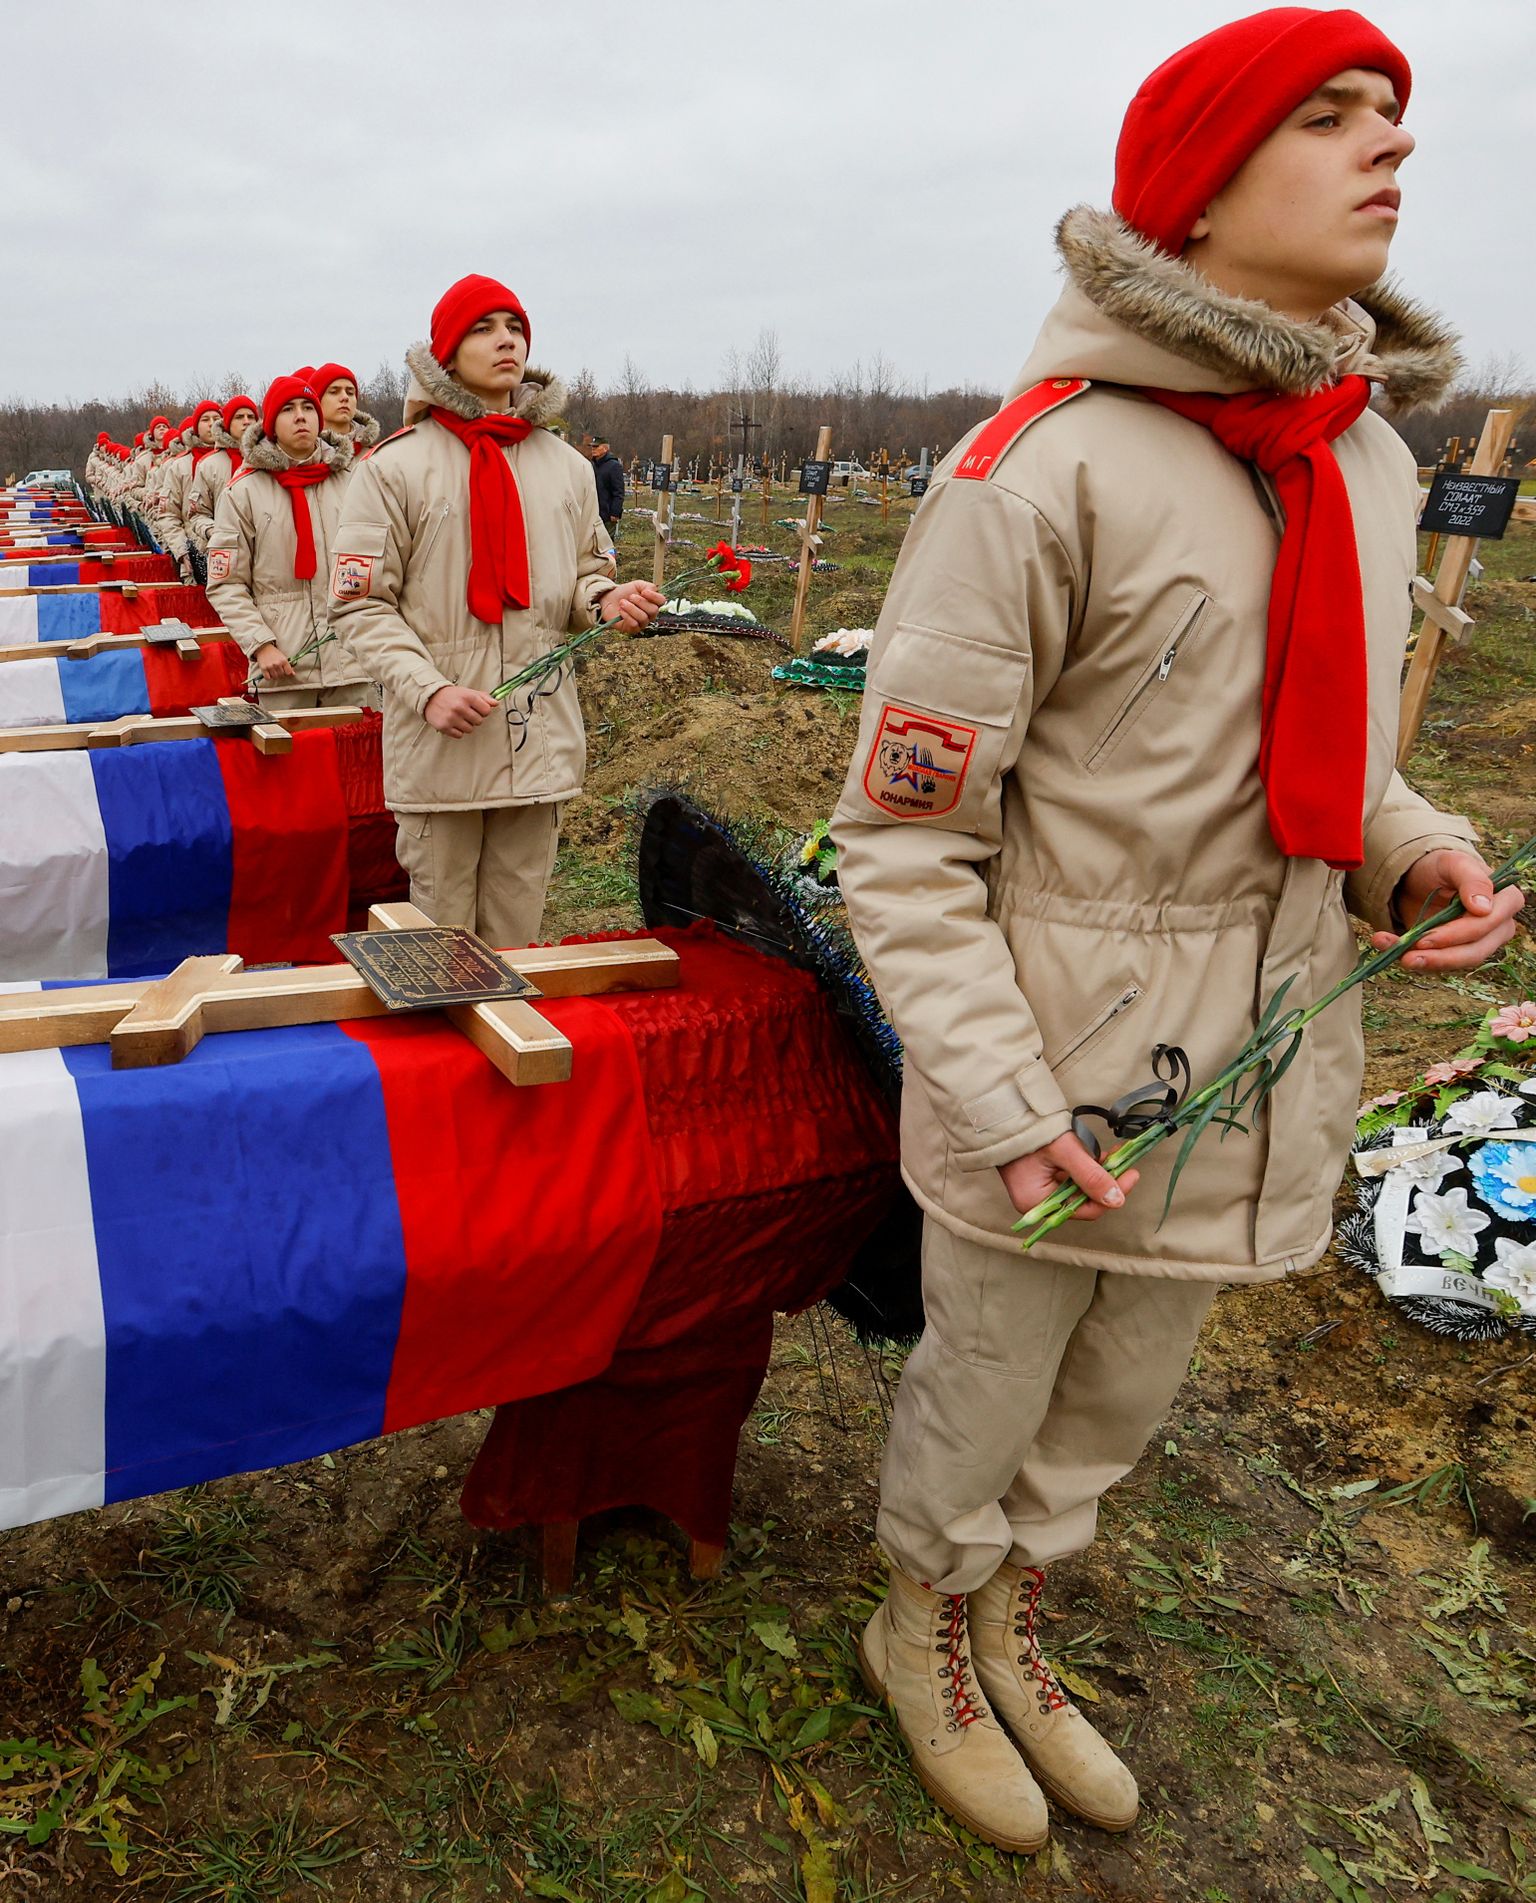 11 ноября в Луганске похоронили 38 погибших российских солдат. В то же время псковский наемник Андрей Васильев, выживший в бою и вернувшийся к своим, был заперт в подвале вместе с товарищами.